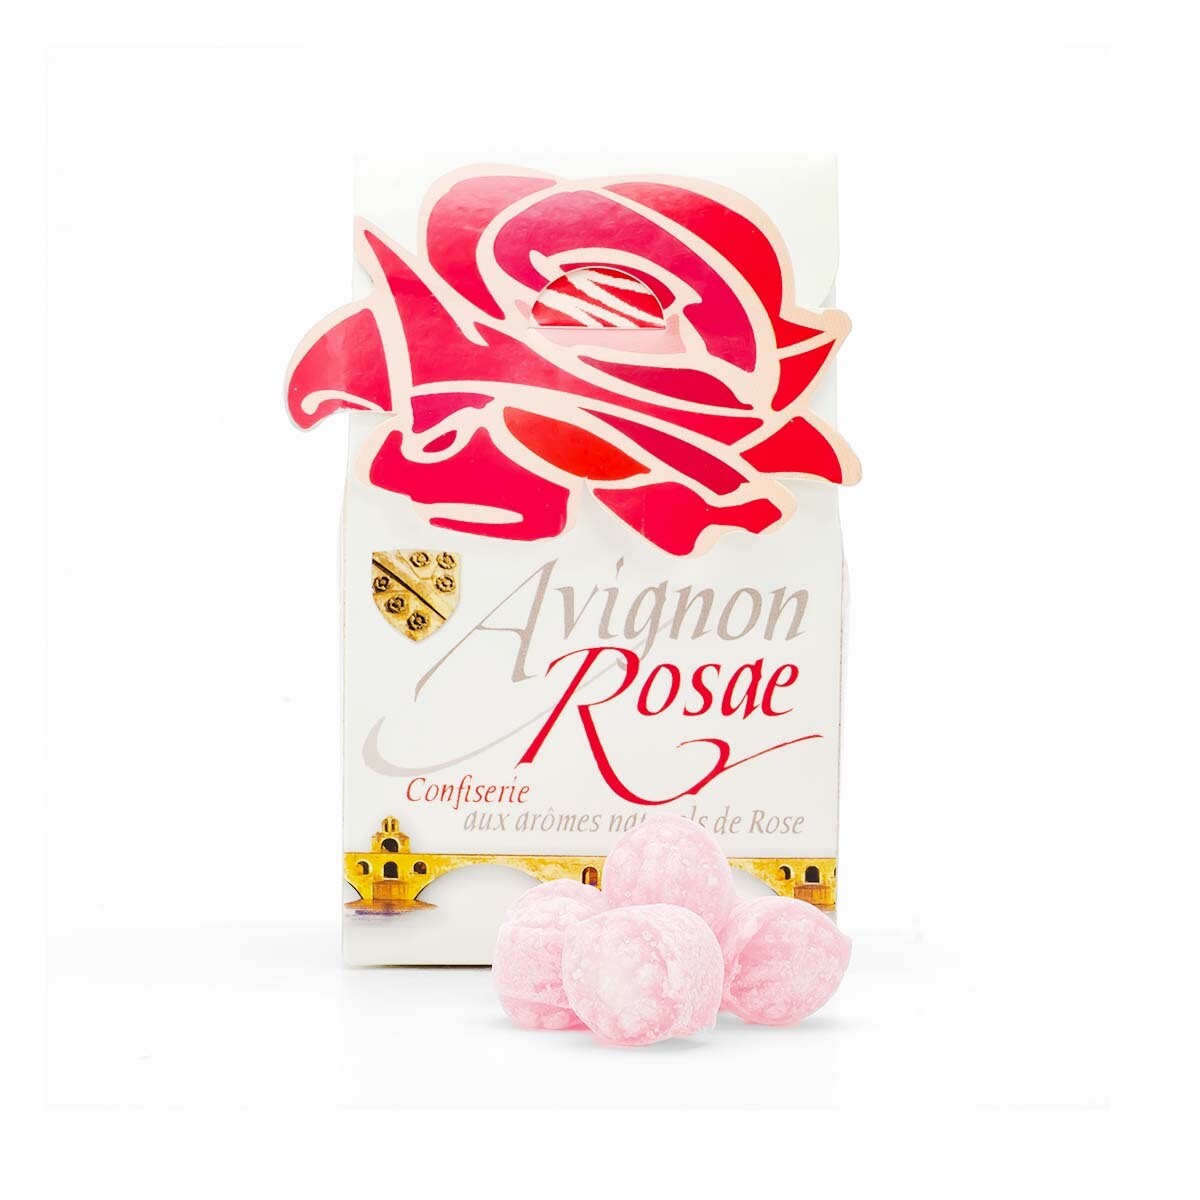 AVIGNON ROSAE Bonbons à la Rose